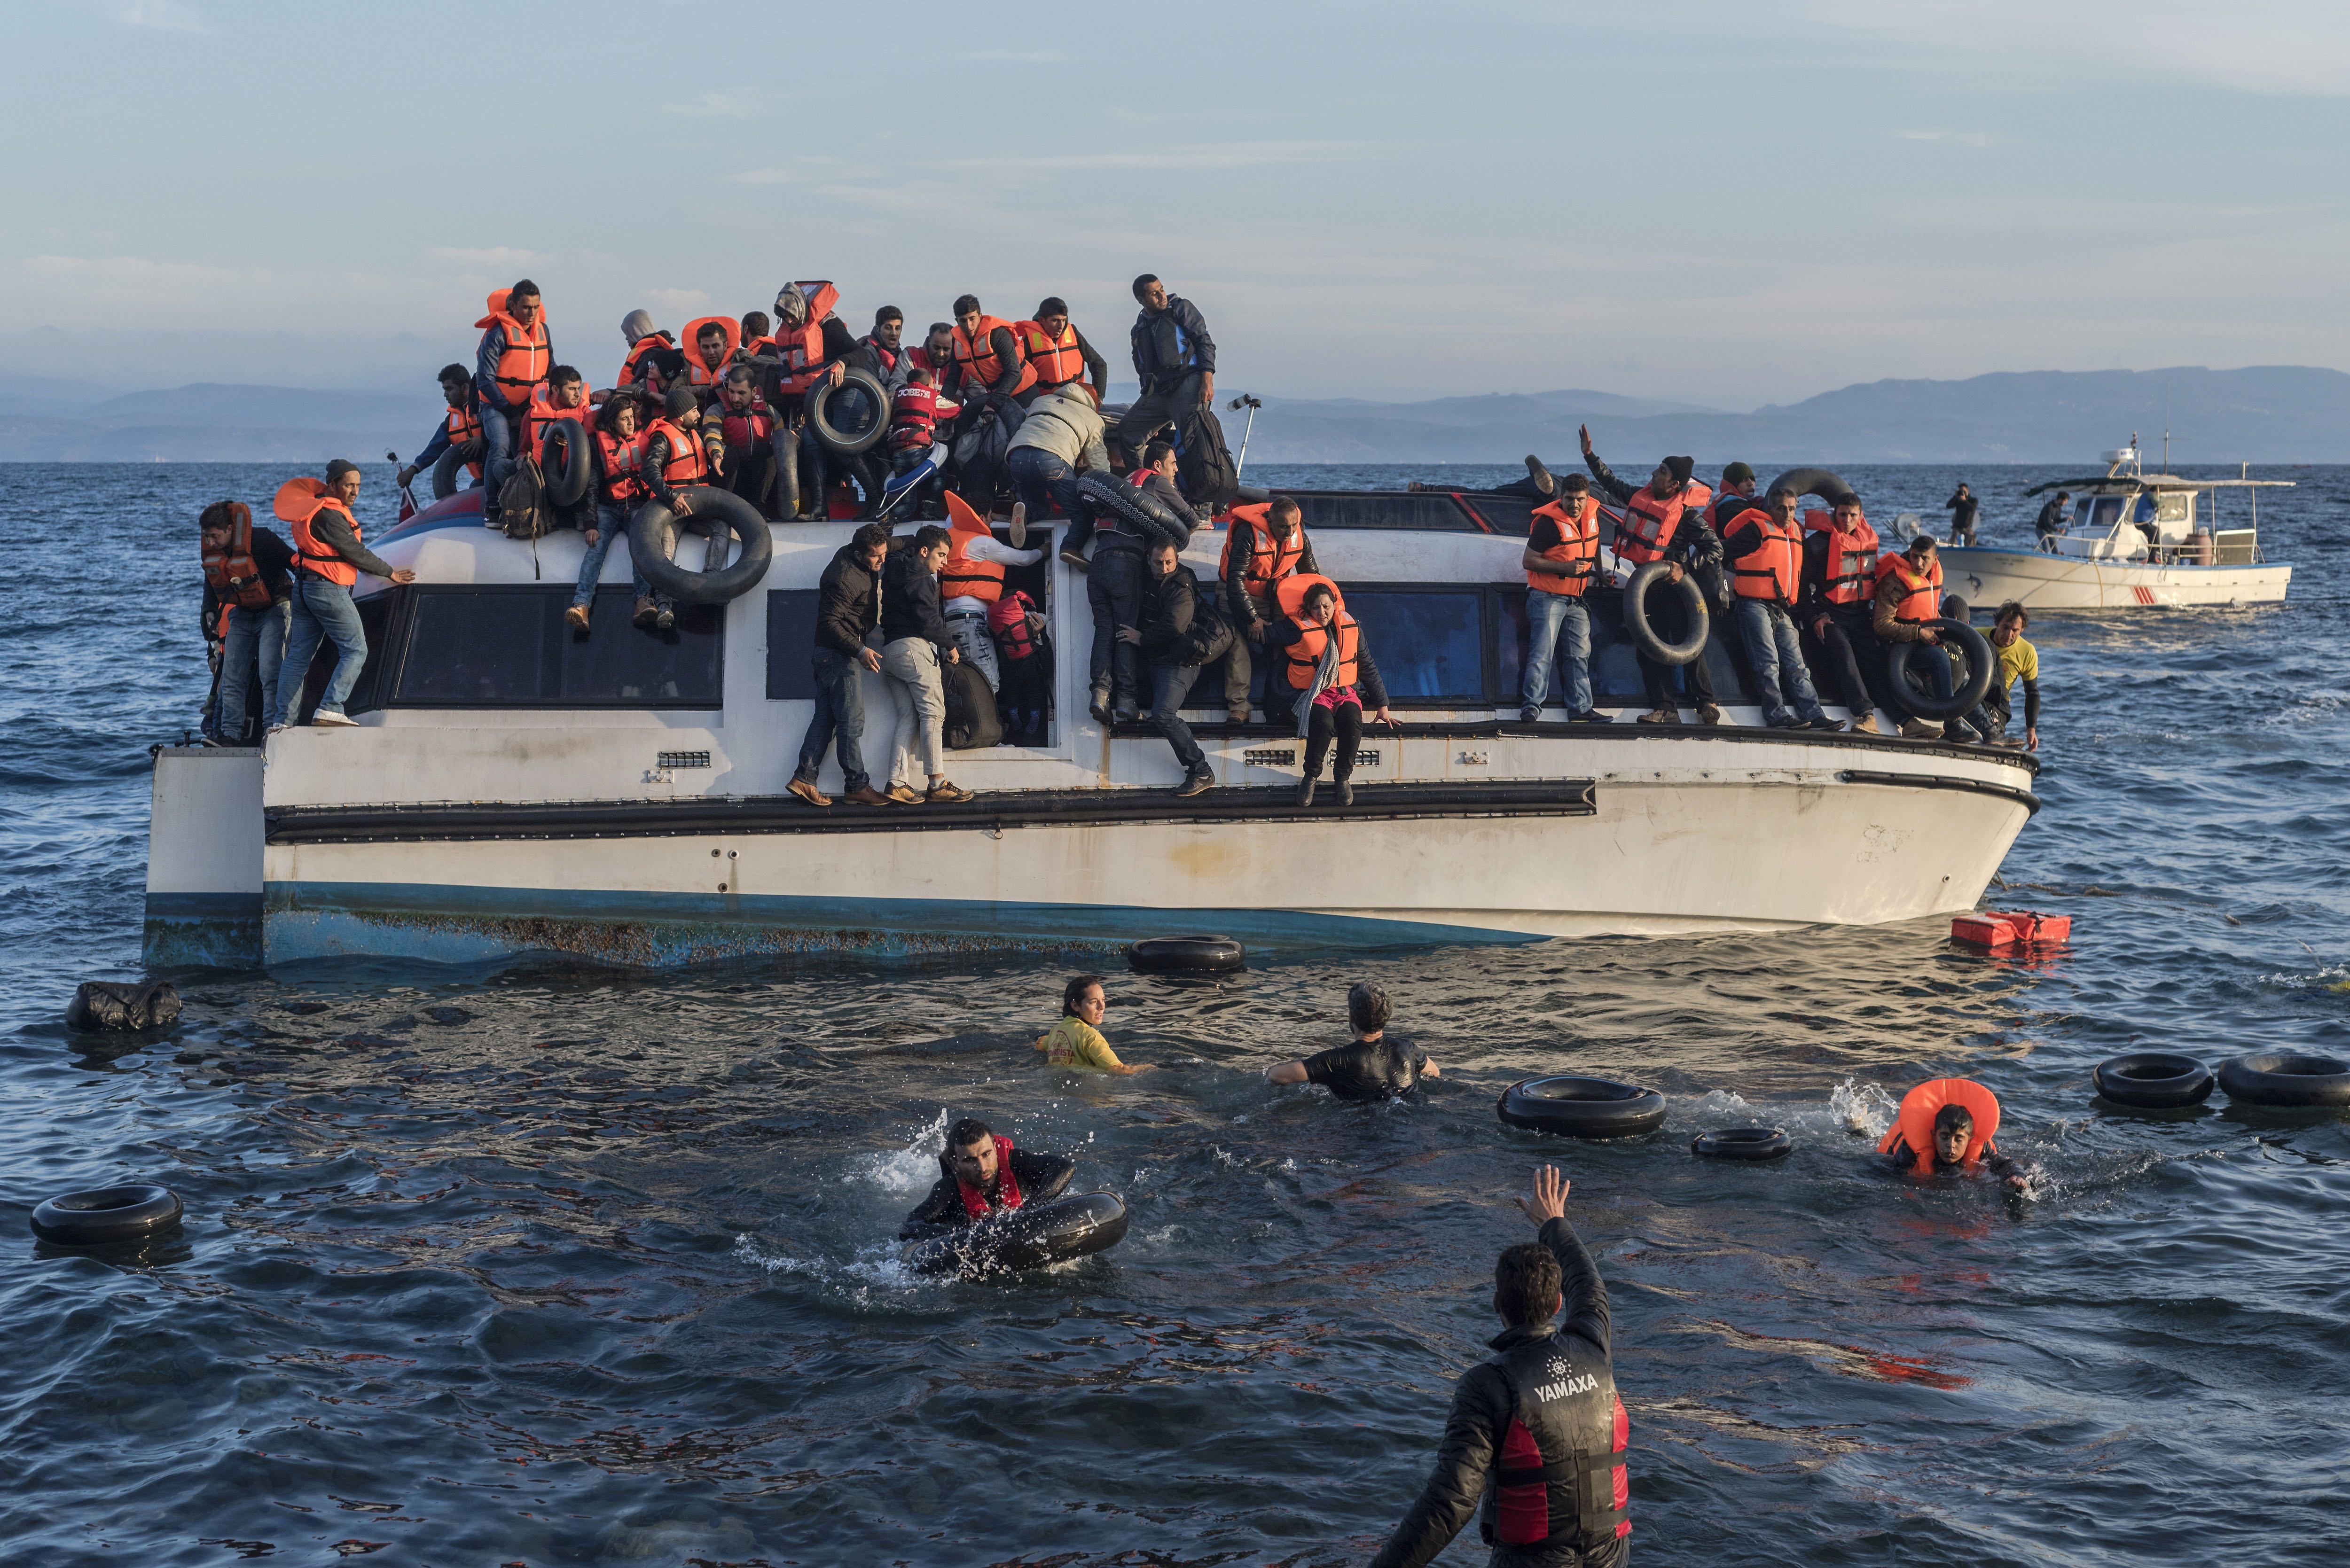 La blessure ignorée des journalistes couvrant la crise des réfugiés